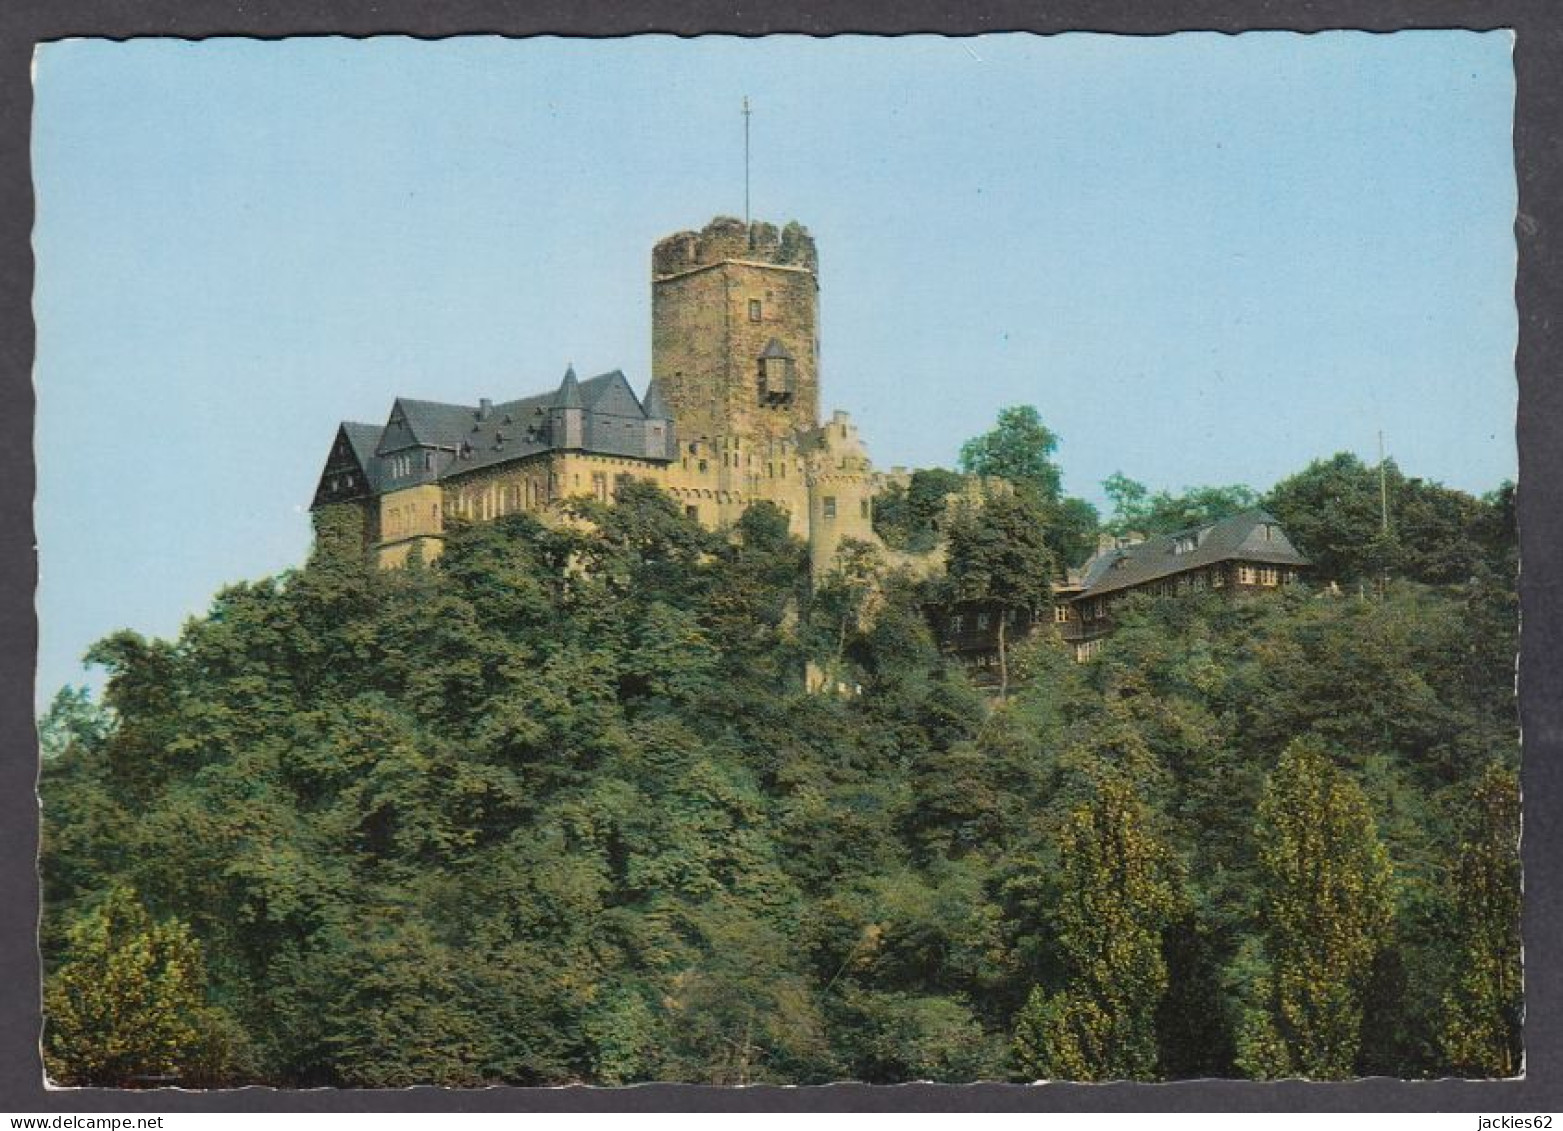 122423/ LAHNSTEIN, Burg Lahneck - Lahnstein